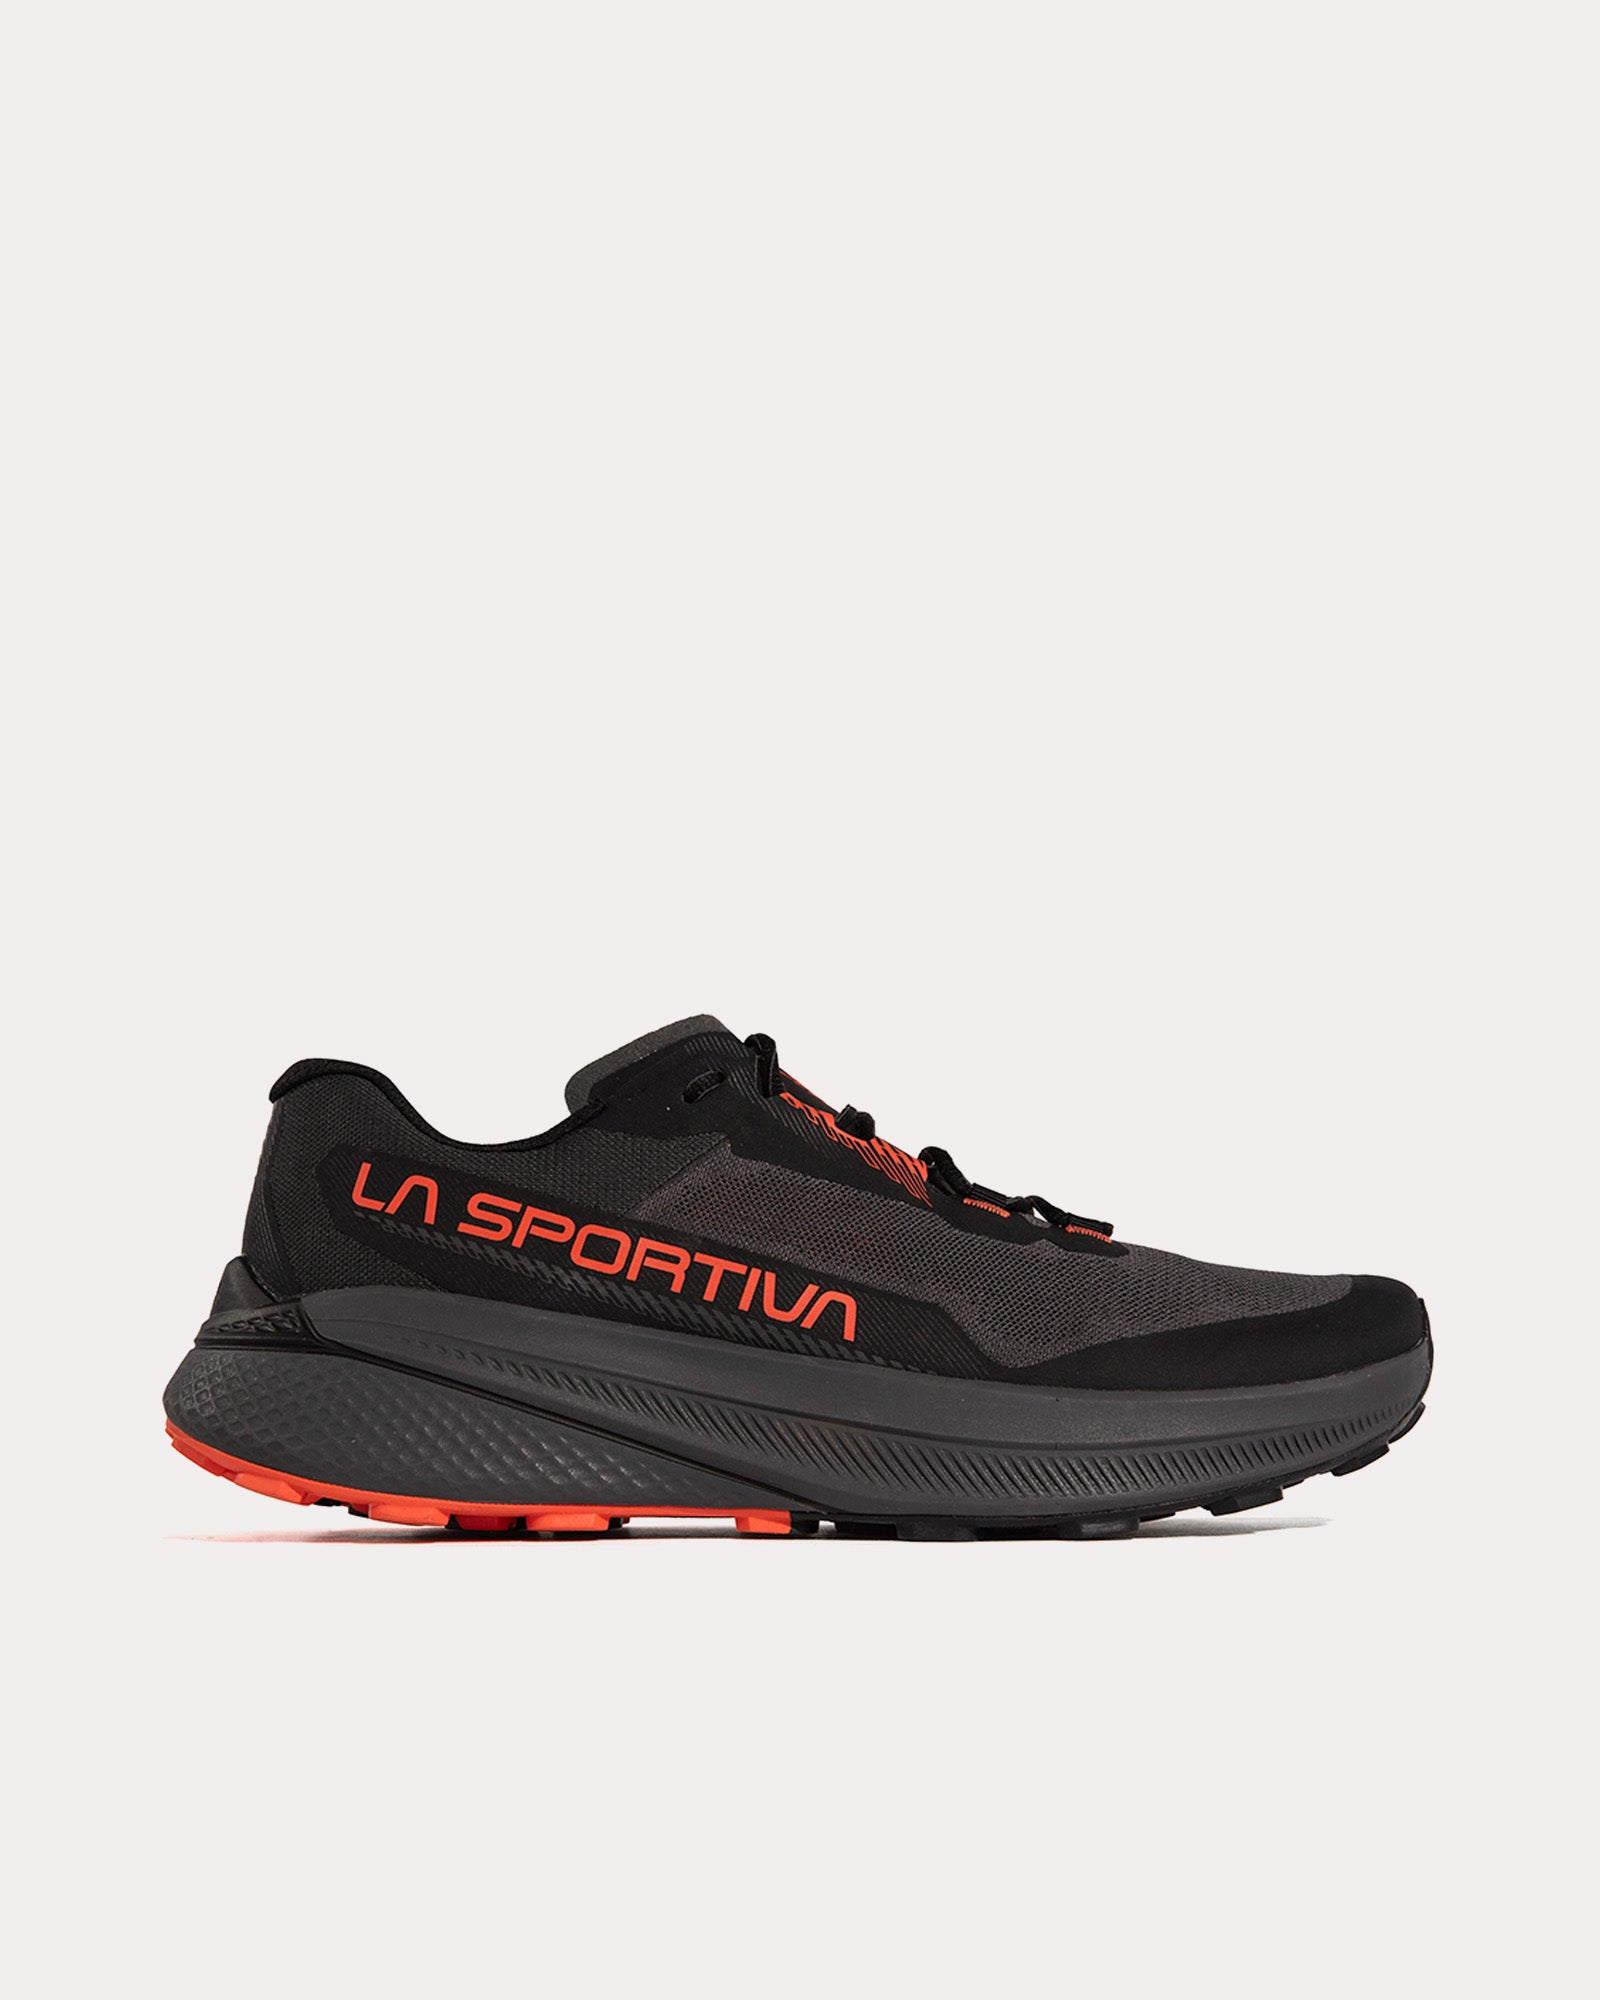 La Sportiva - Prodigio Carbon / Cherry Tomato Running Shoes